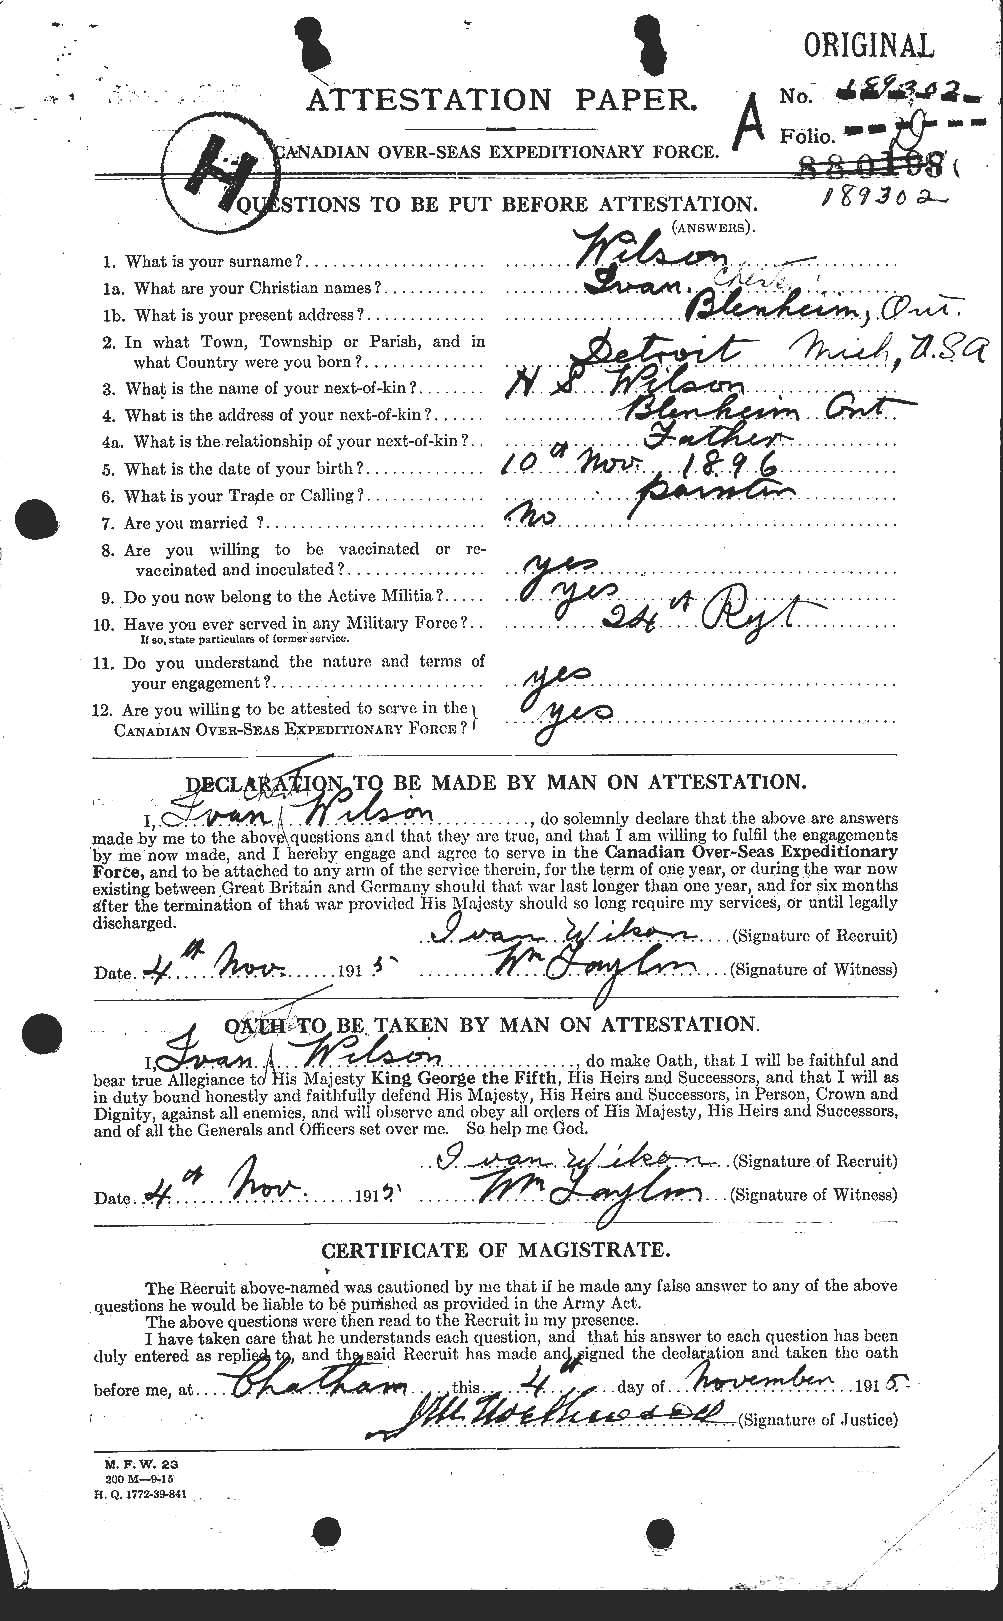 Dossiers du Personnel de la Première Guerre mondiale - CEC 679631a